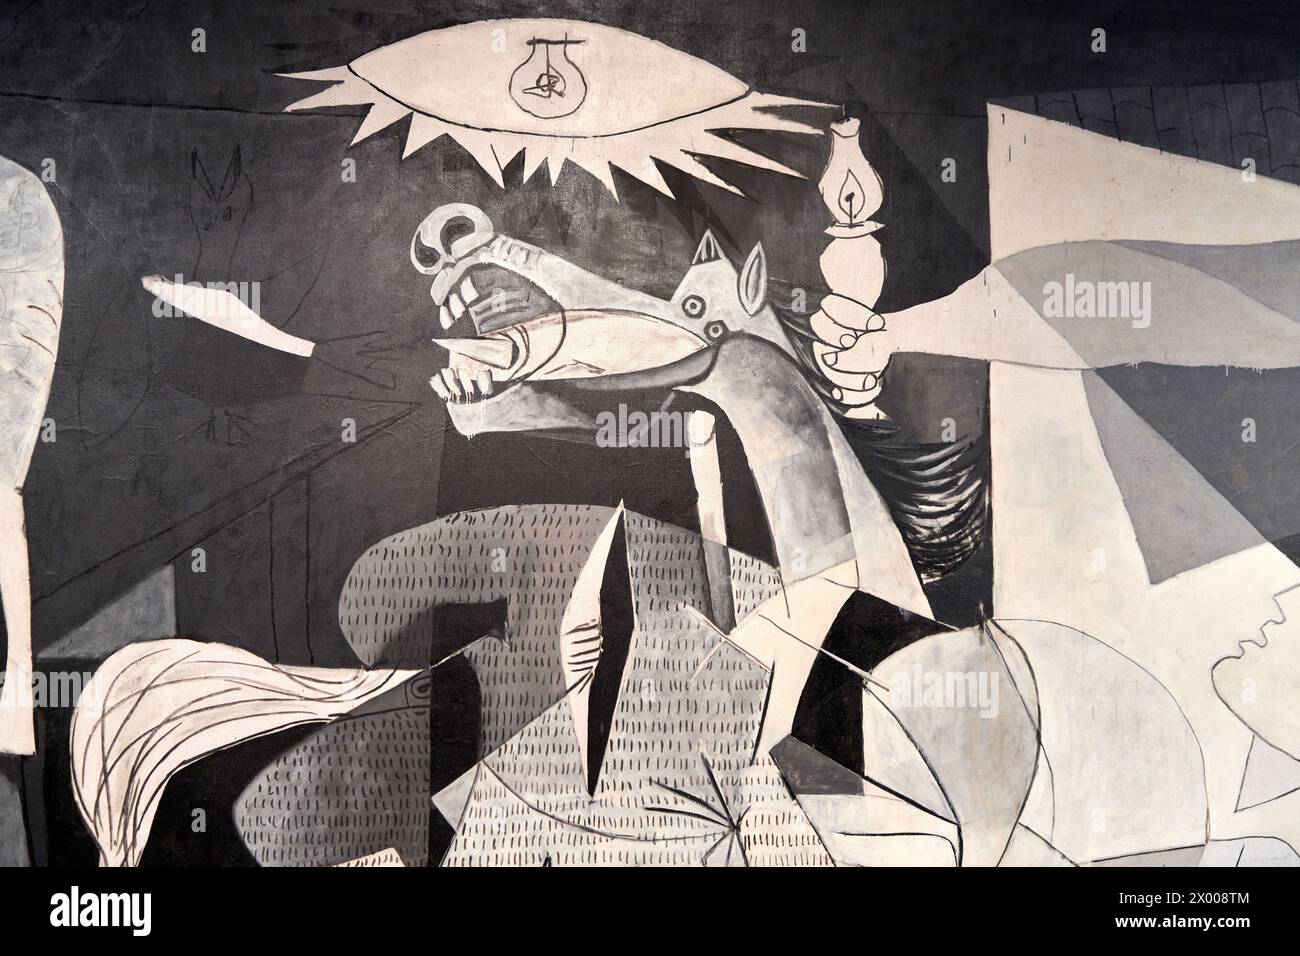 Guernica, 1937, Pablo Picasso (1881-1973), Reina Sofia Museum, Madrid, Spain, Europe. Stock Photo